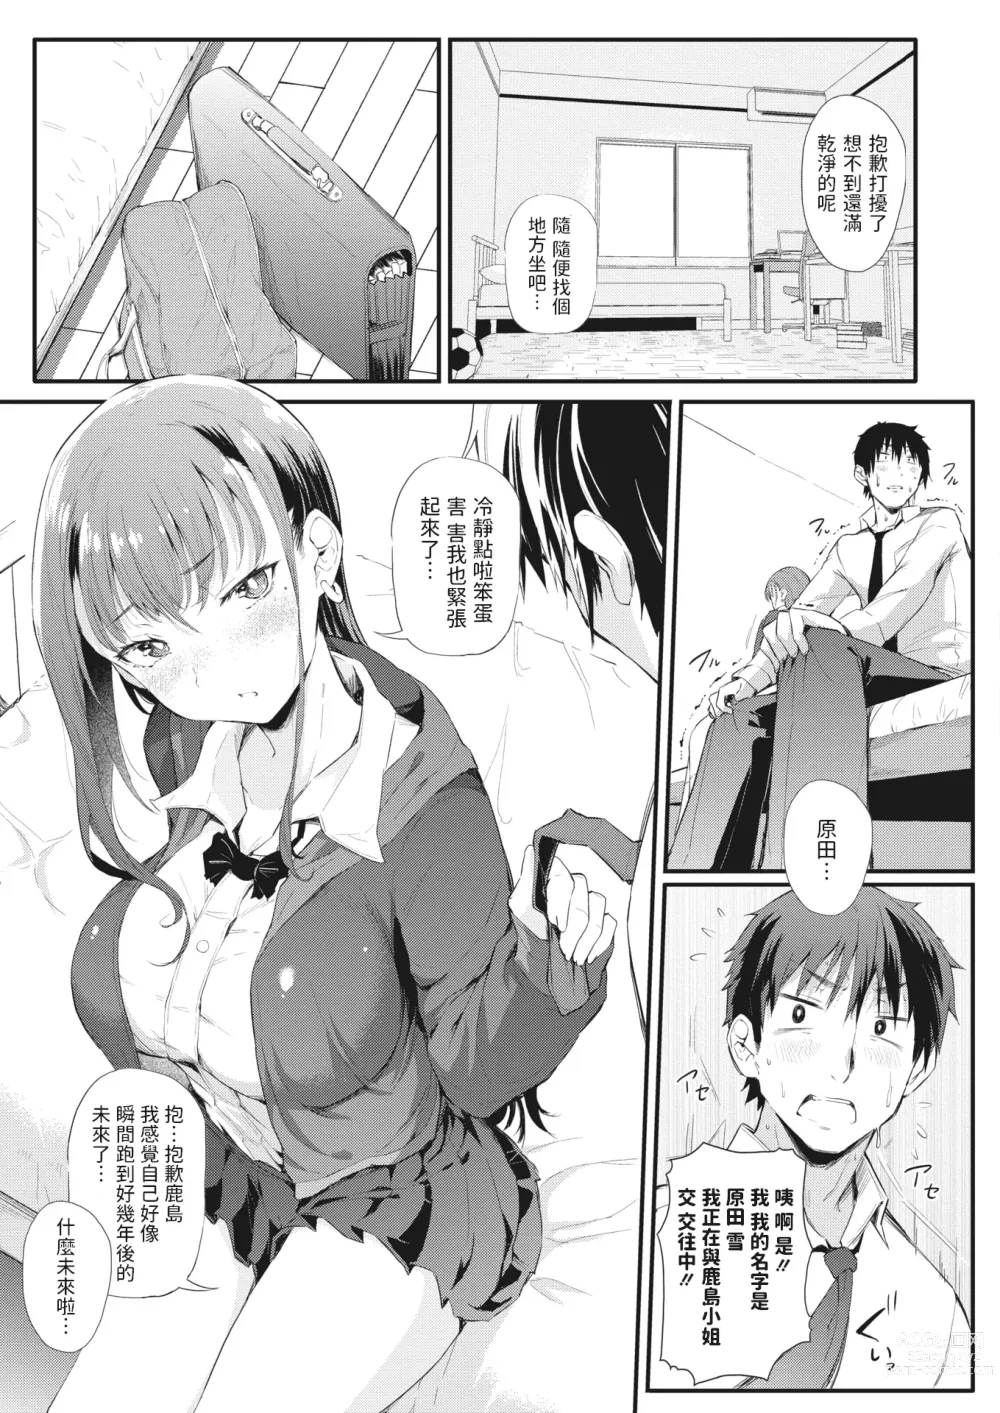 Page 9 of manga Koitsura Ichatsuiten zo ~Kashima to Harada~